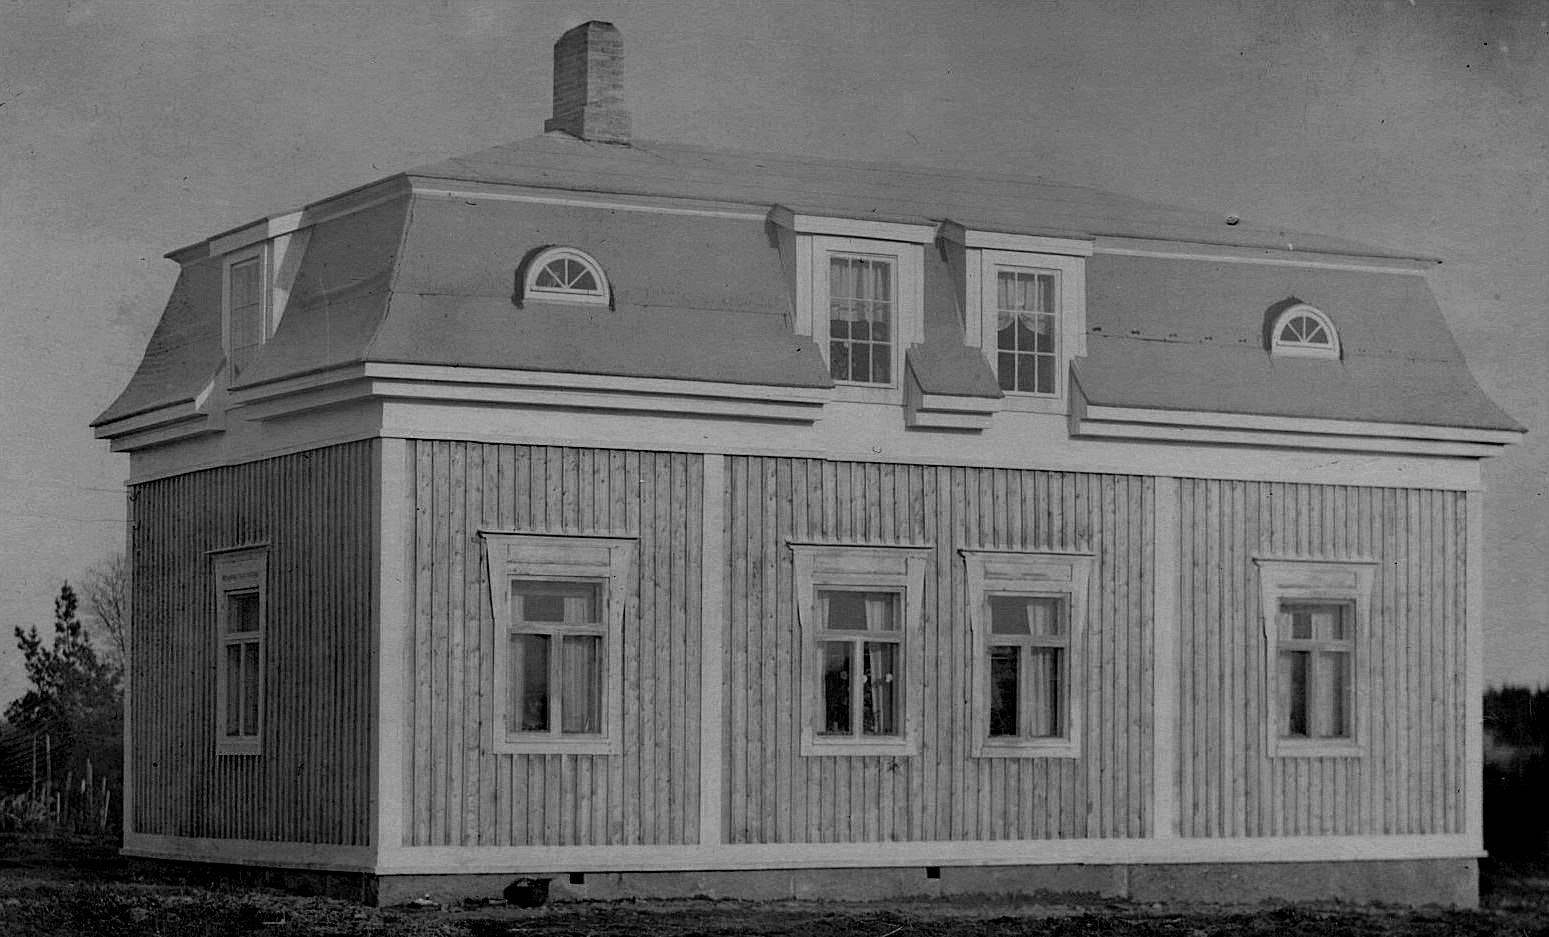 En arkitekt från Närpes gjorde ritningarna till denna gård i slutet på 1920-talet. Huset försågs redan då med centralvärme och innetoalett, den första i Dagsmark. Också på vinden finns det flera rum.